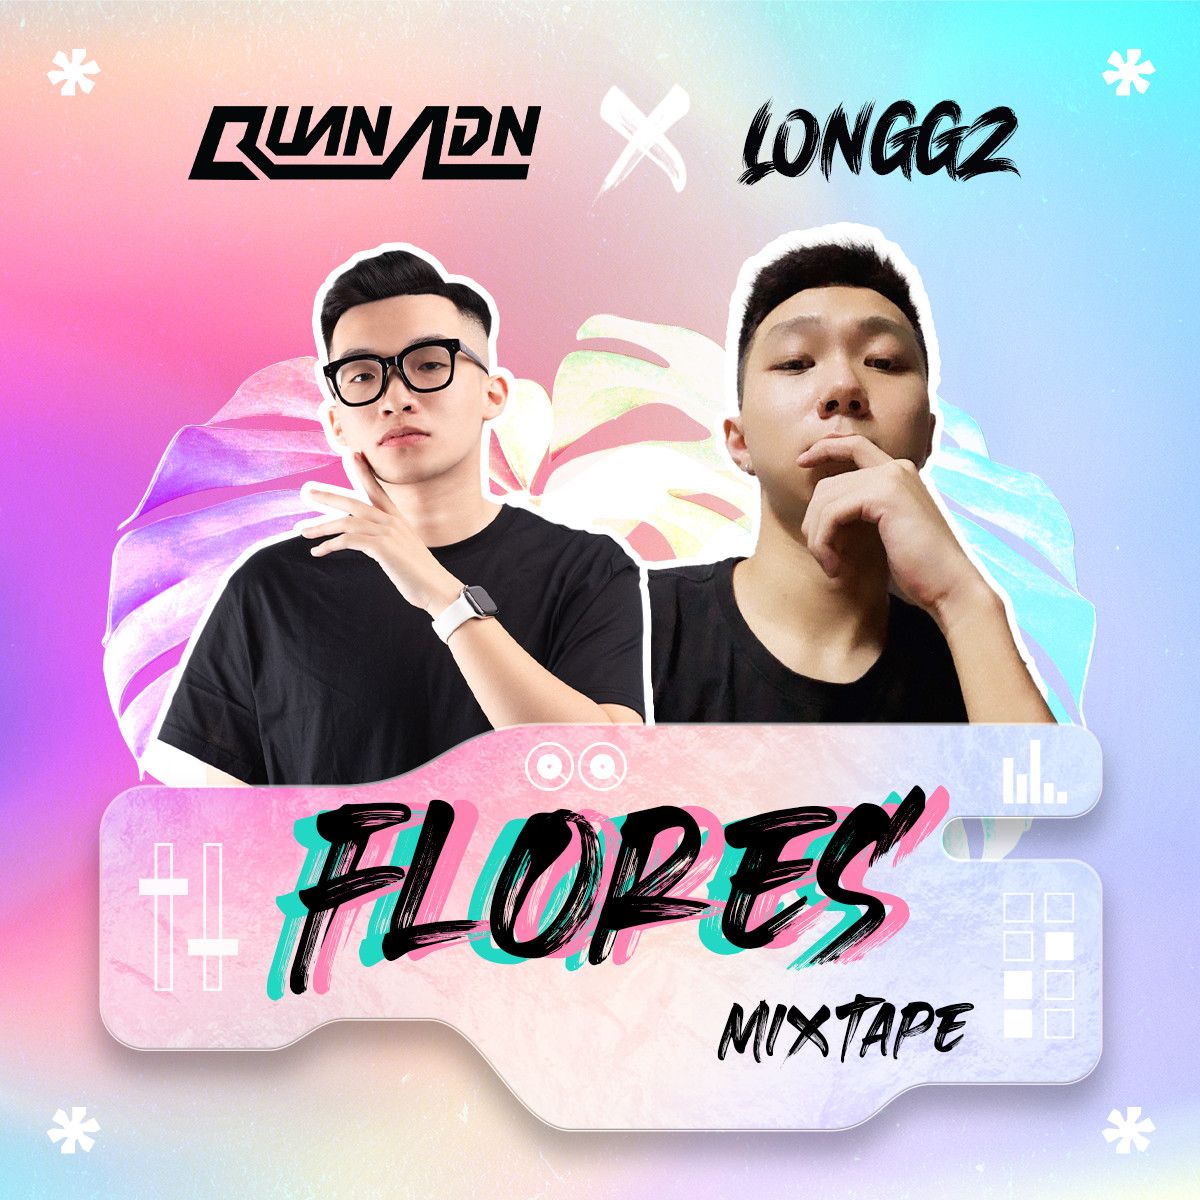 ဒေါင်းလုပ် Mixtape - Flores by Quan ADN & LONGGZ